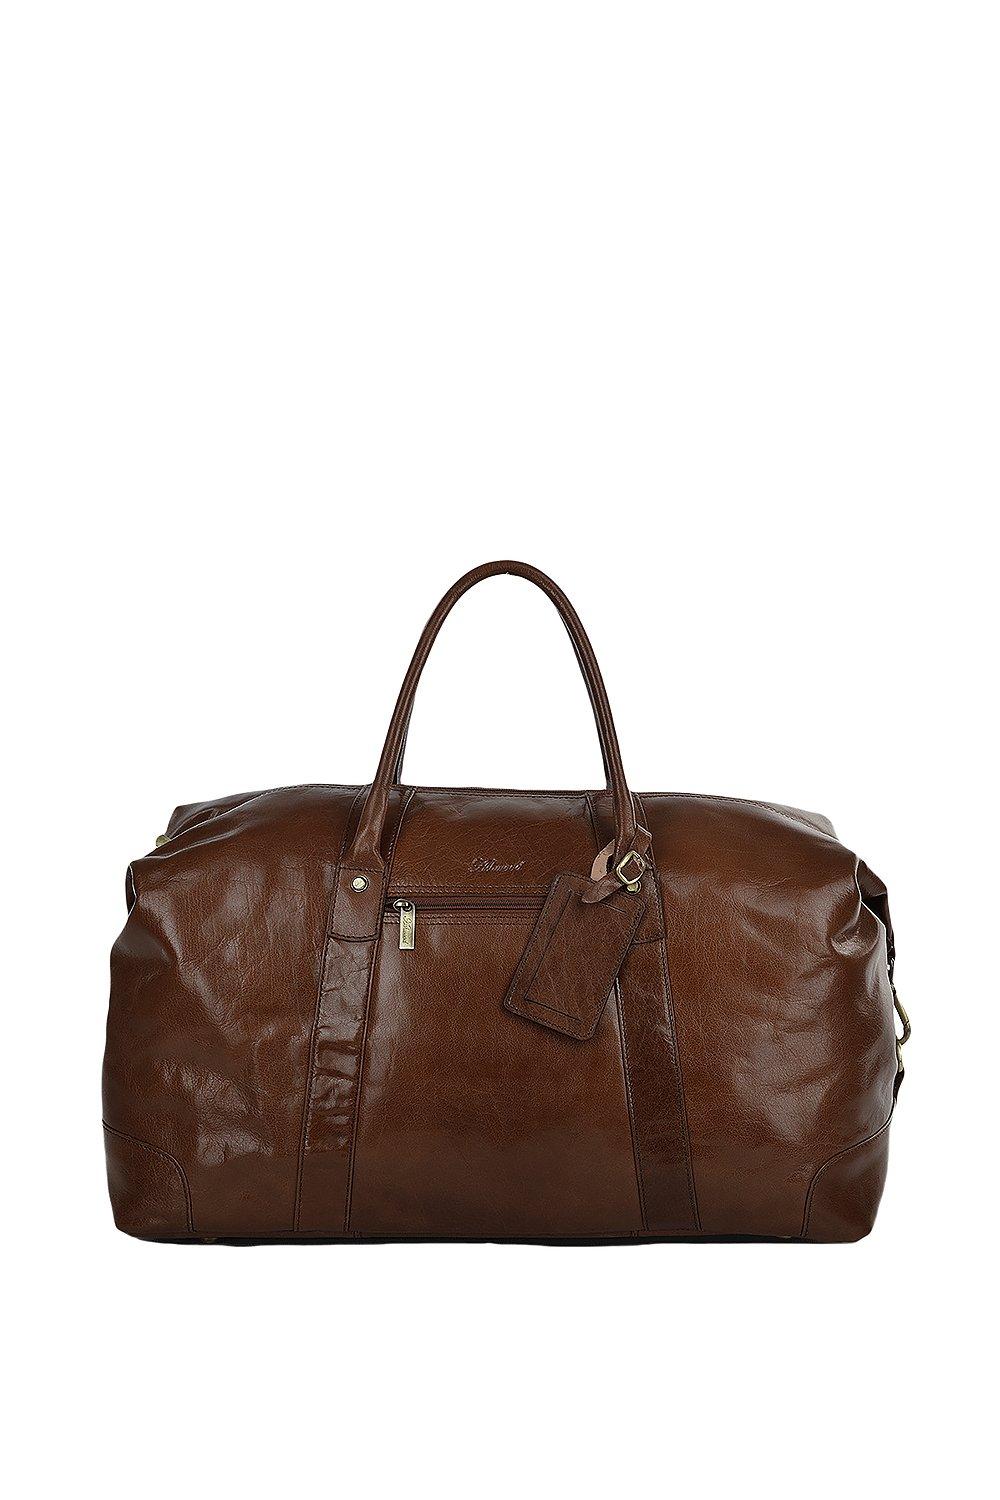 Очень большая дорожная сумка из натуральной кожи растительного дубления Ashwood Leather, коричневый сумка дорожная шарпей натуральная кожа плечевой ремень черный